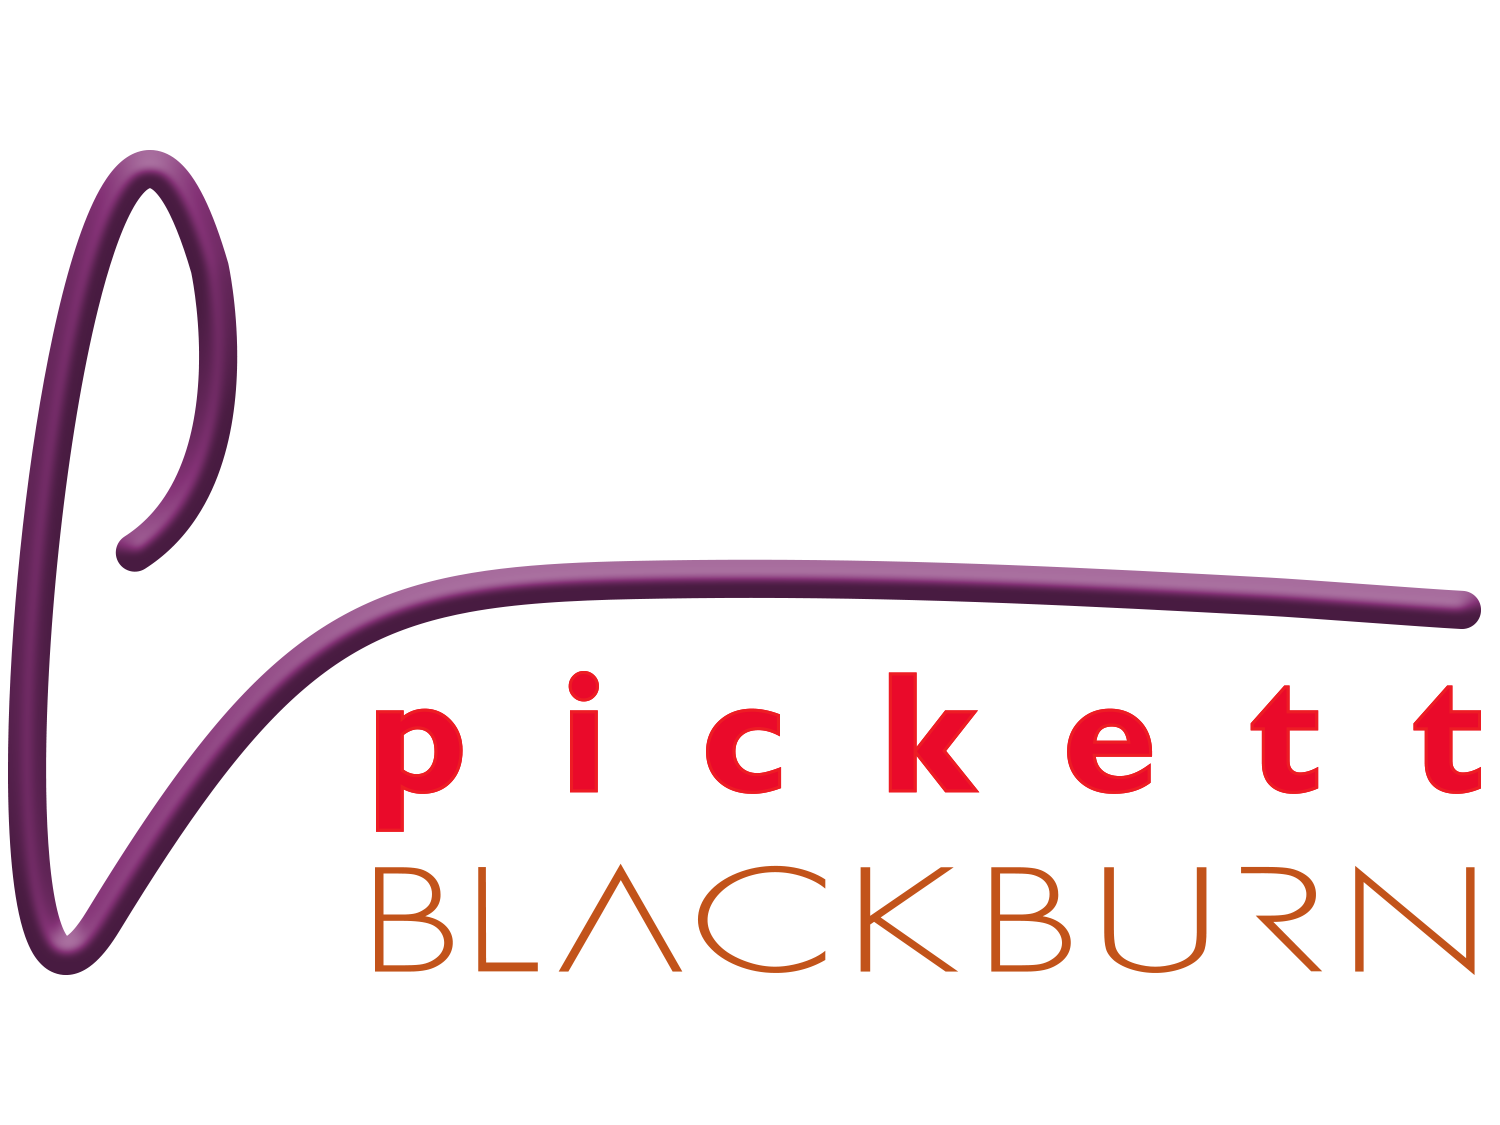 Pickett Blackburn Combined 1500x1125